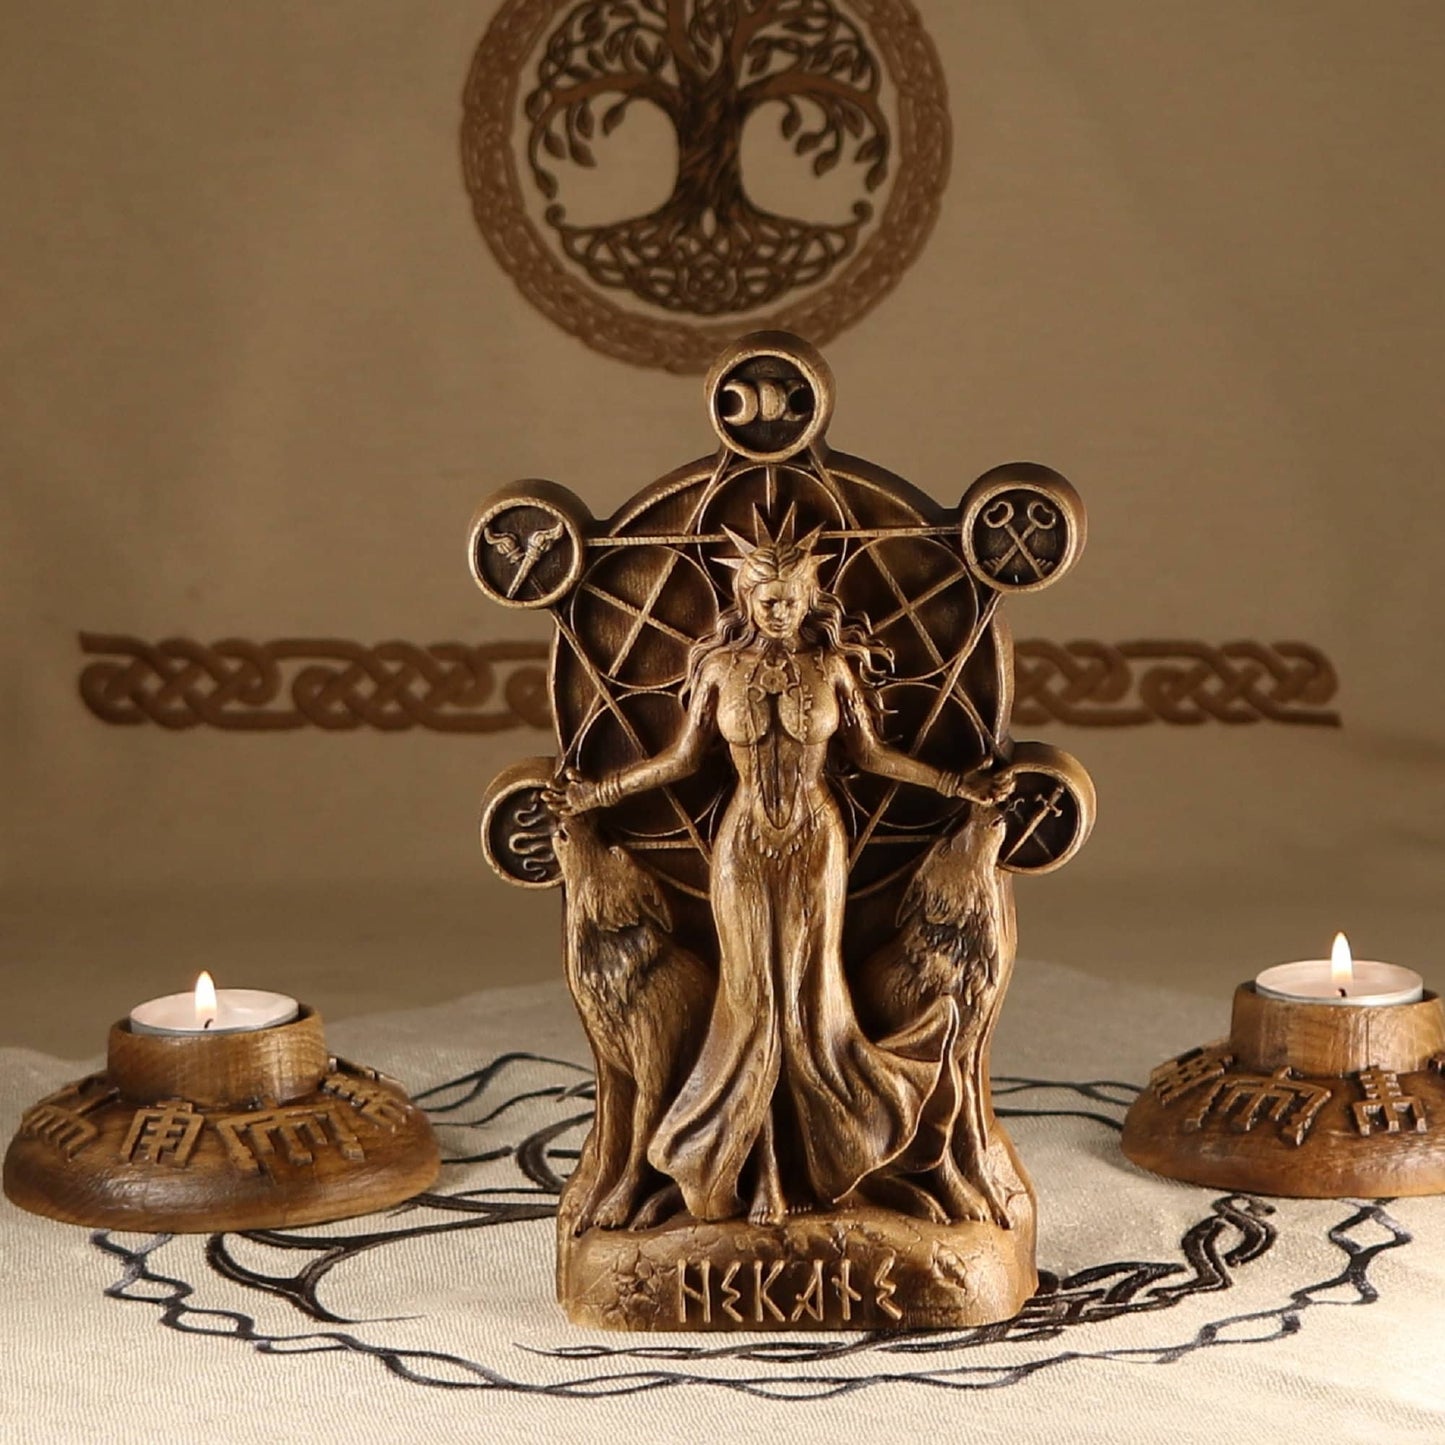 Wooden Hekate Statue - Triple Goddess Sculpture